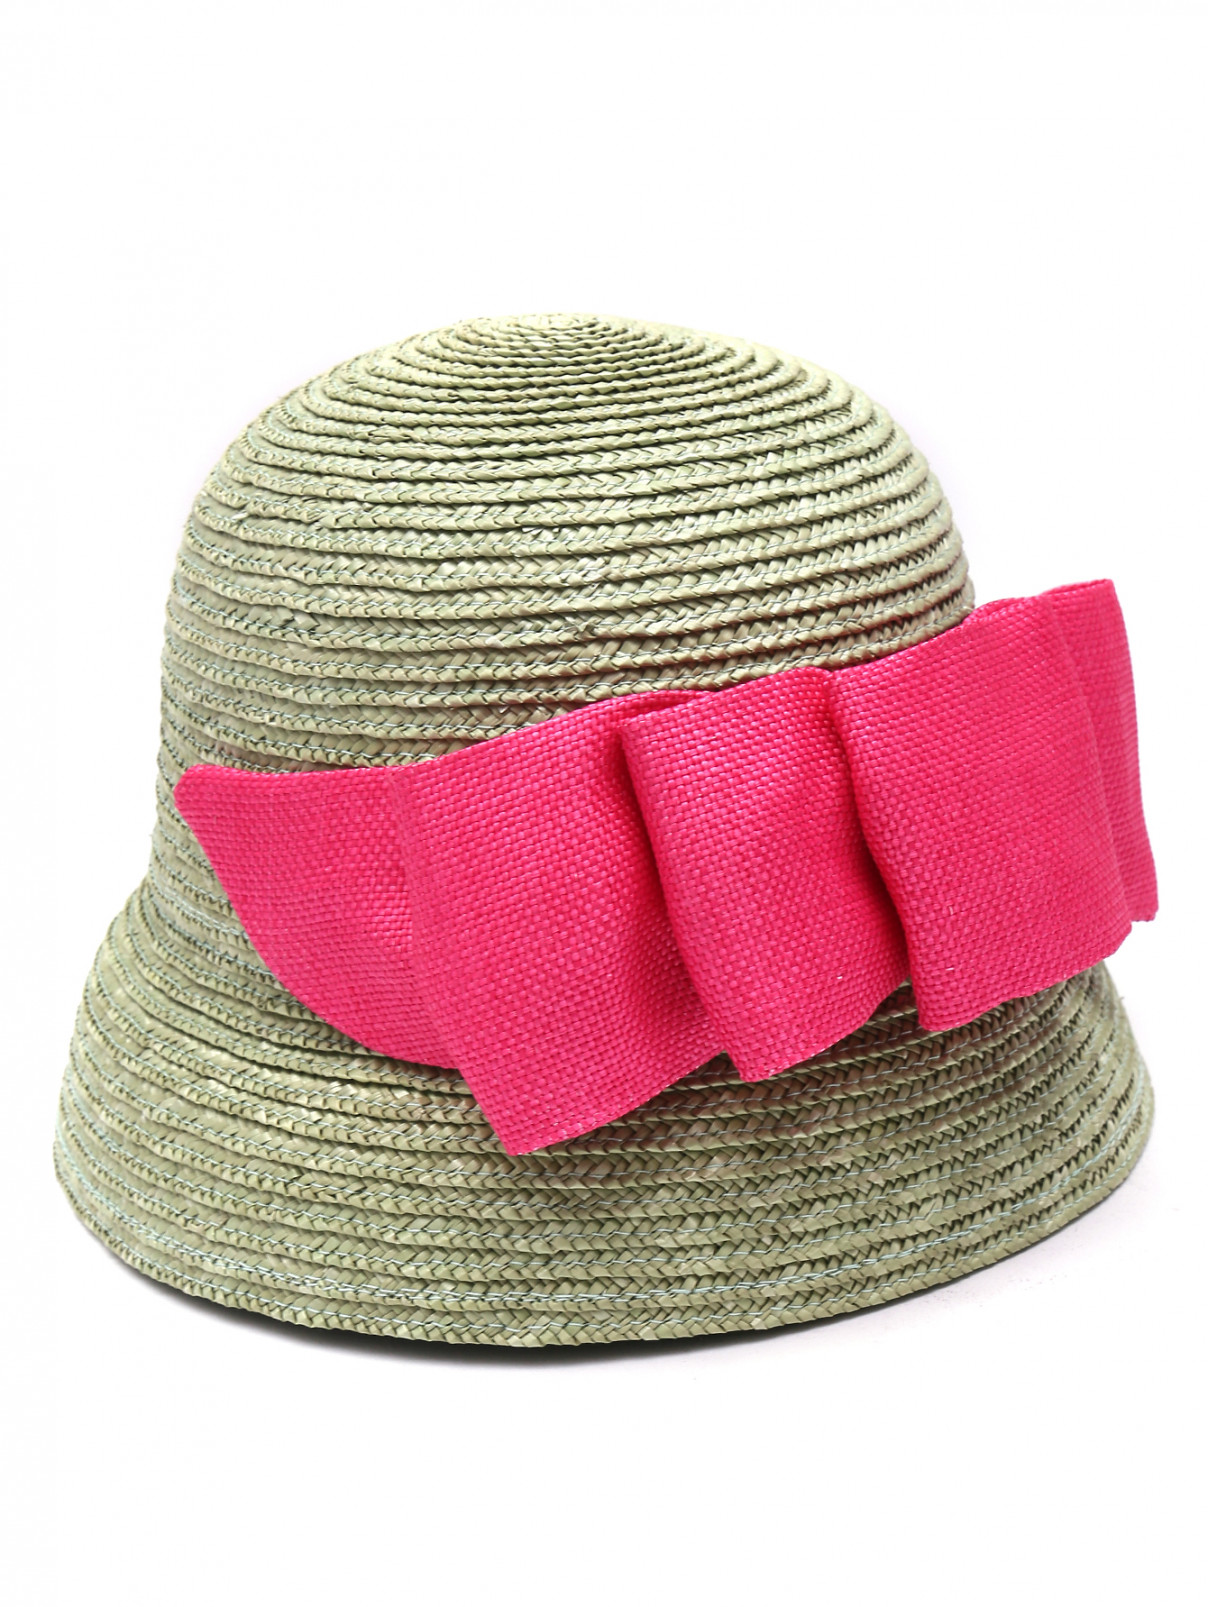 Шляпа из соломы с бантом MiMiSol  –  Общий вид  – Цвет:  Зеленый